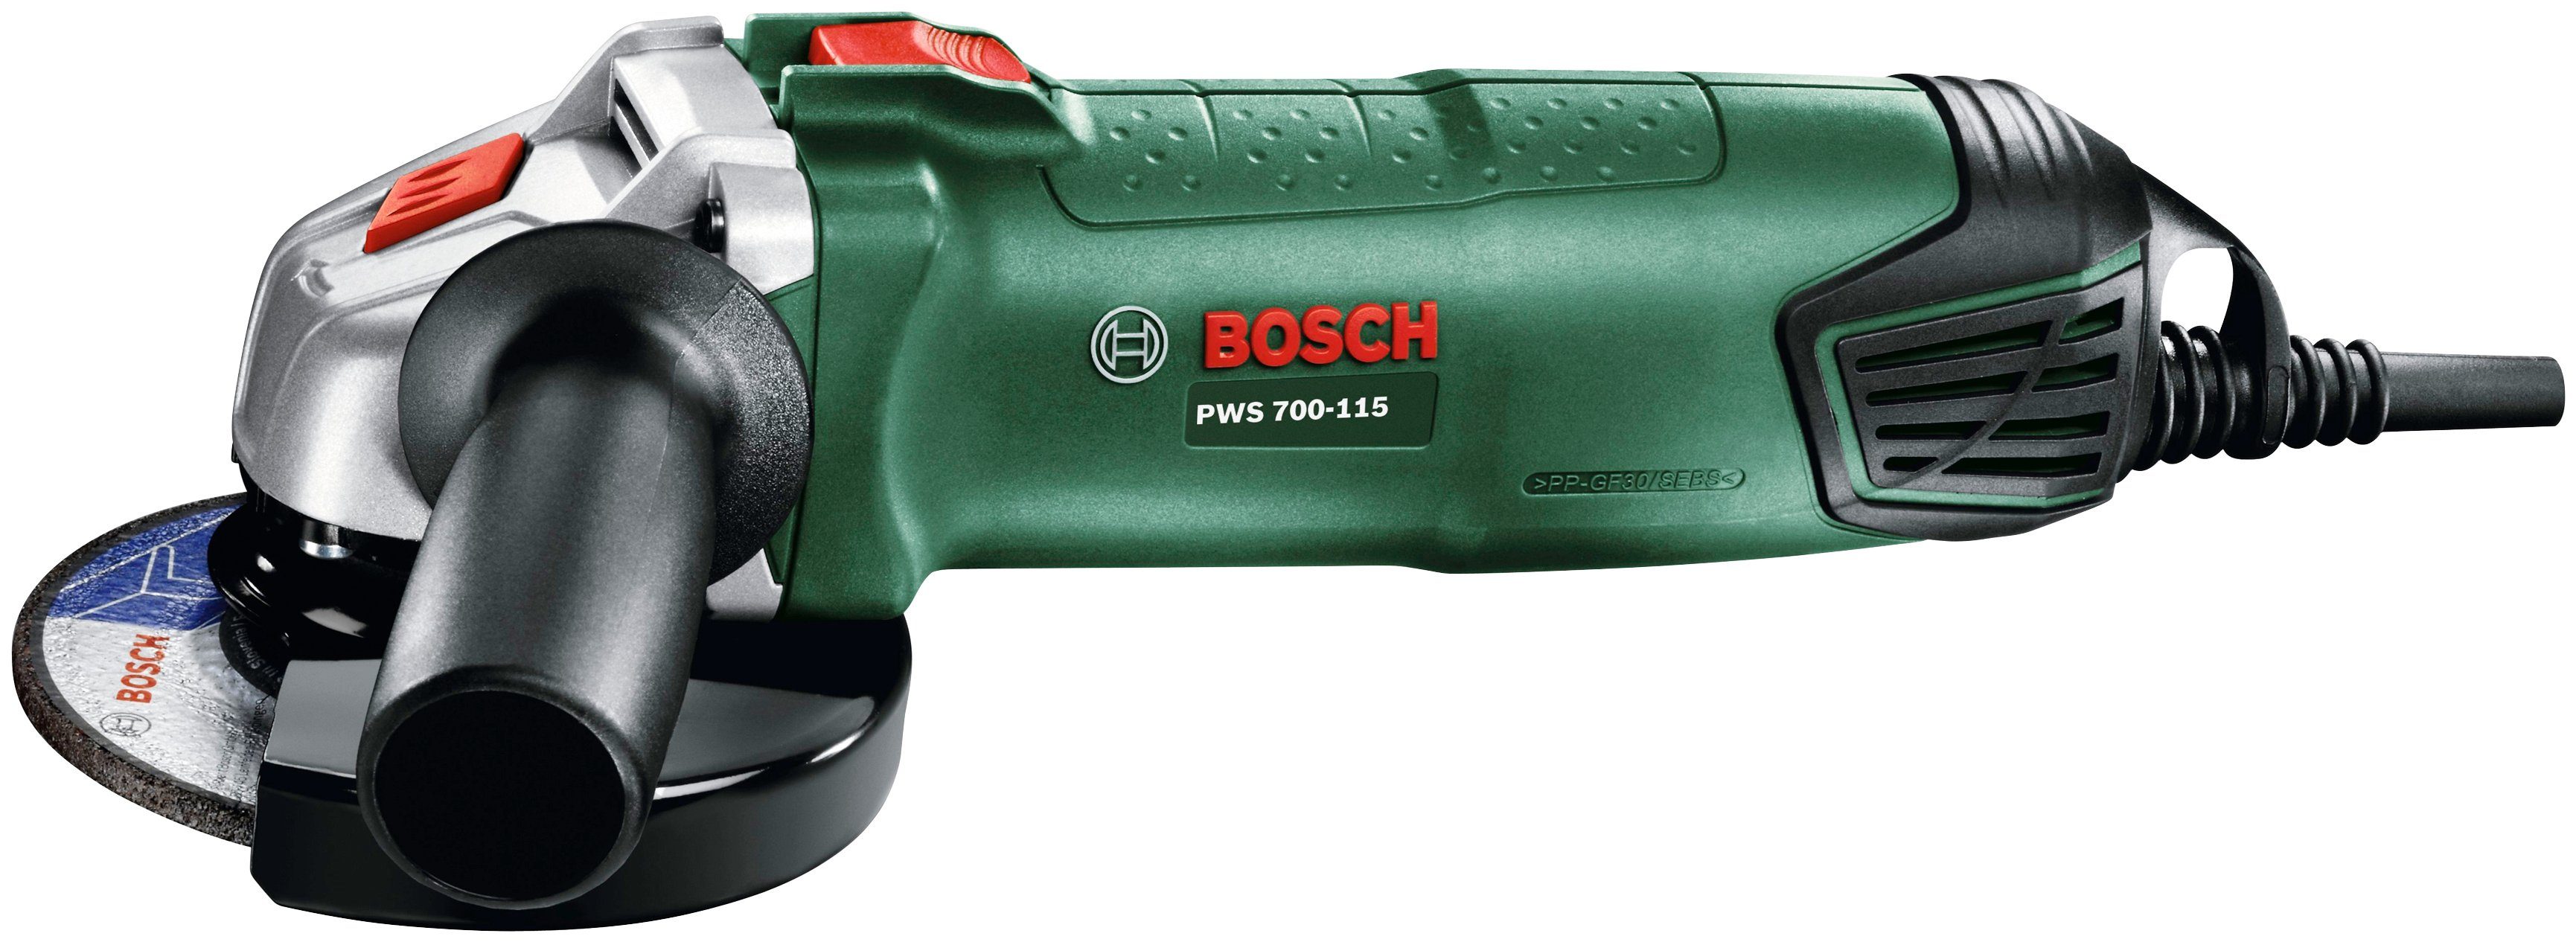 Bosch Home & Garden Winkelschleifer 700-115 PWS